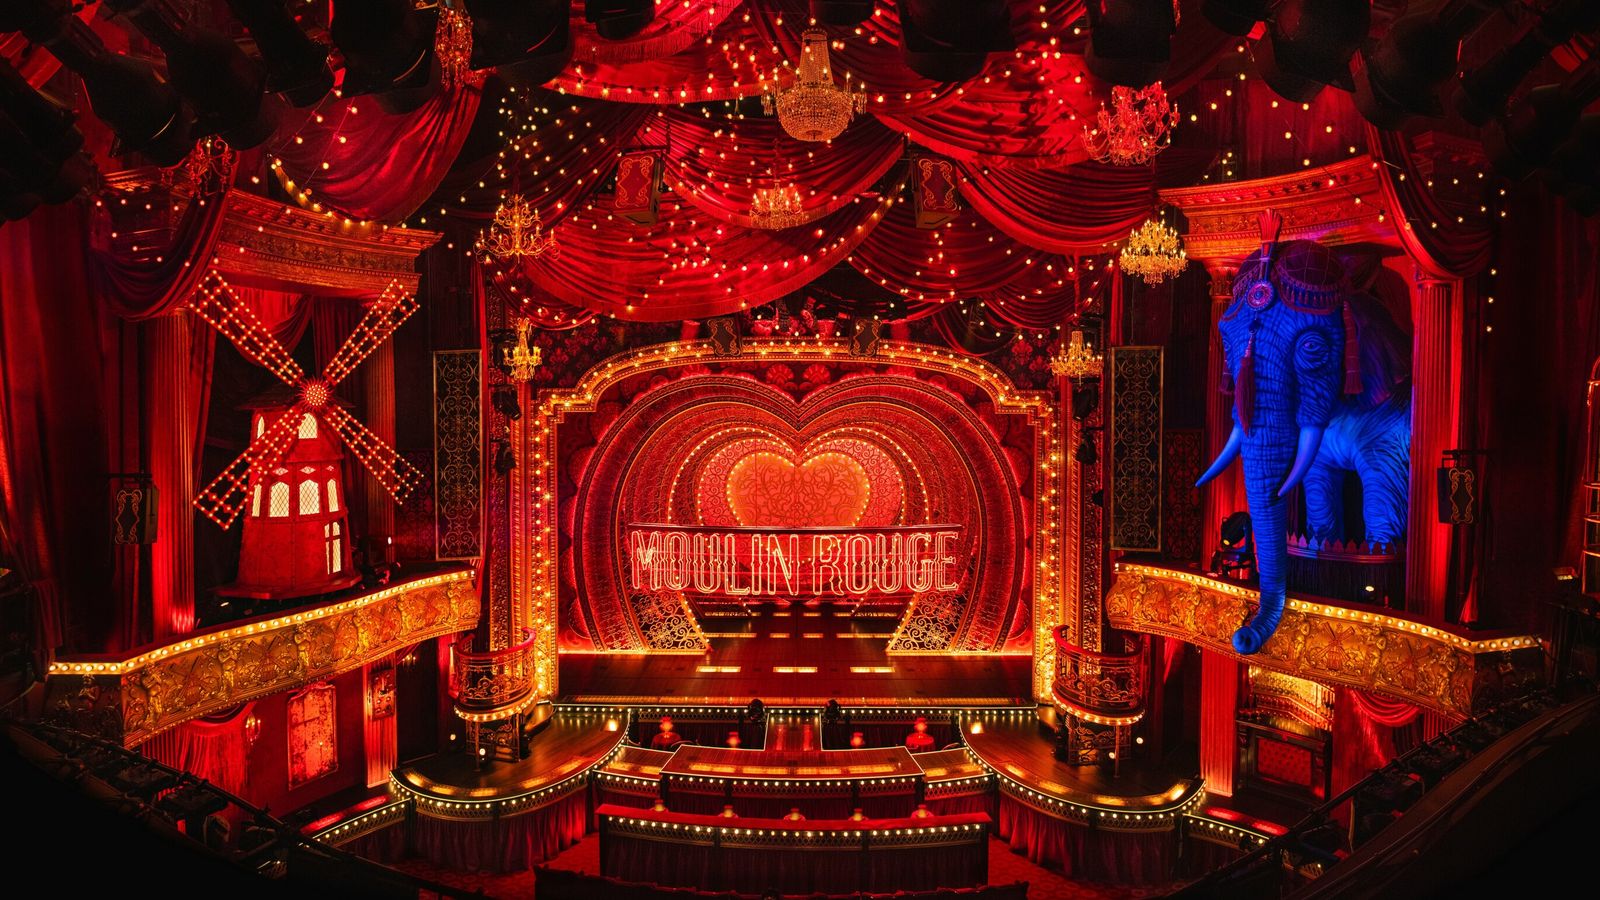 COVID-19: Moulin Rouge!  menjadi pertunjukan West End pertama yang mewajibkan masker wajah dalam hal masuk |  Berita Ent & Seni